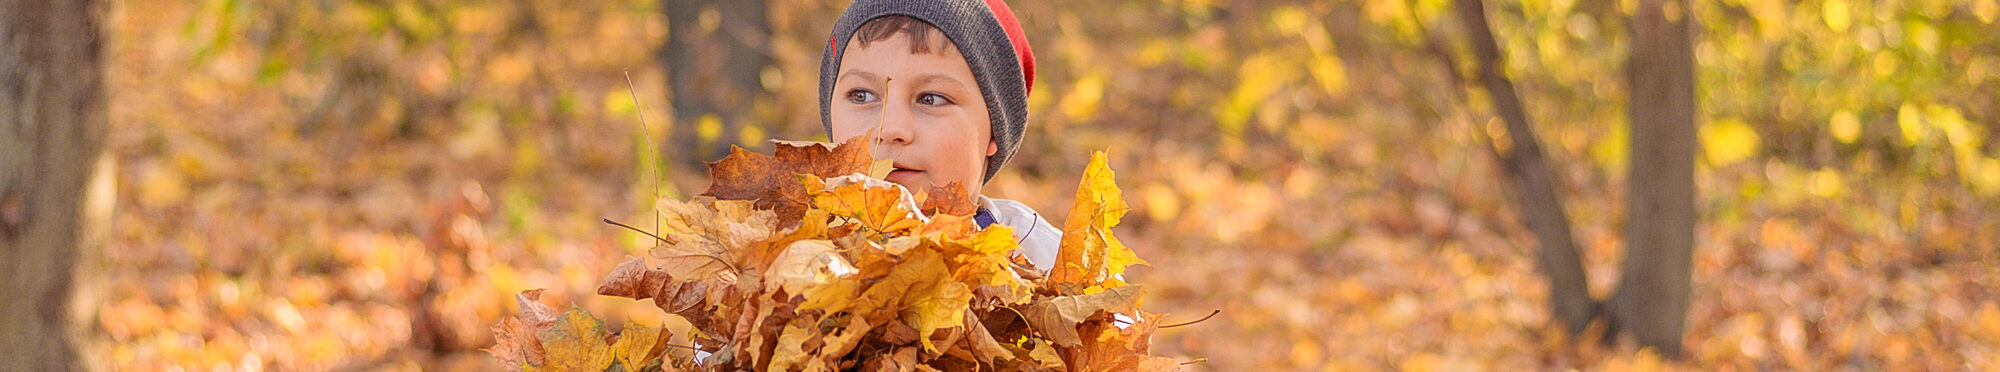 Junge spielt mit Herbstlaub